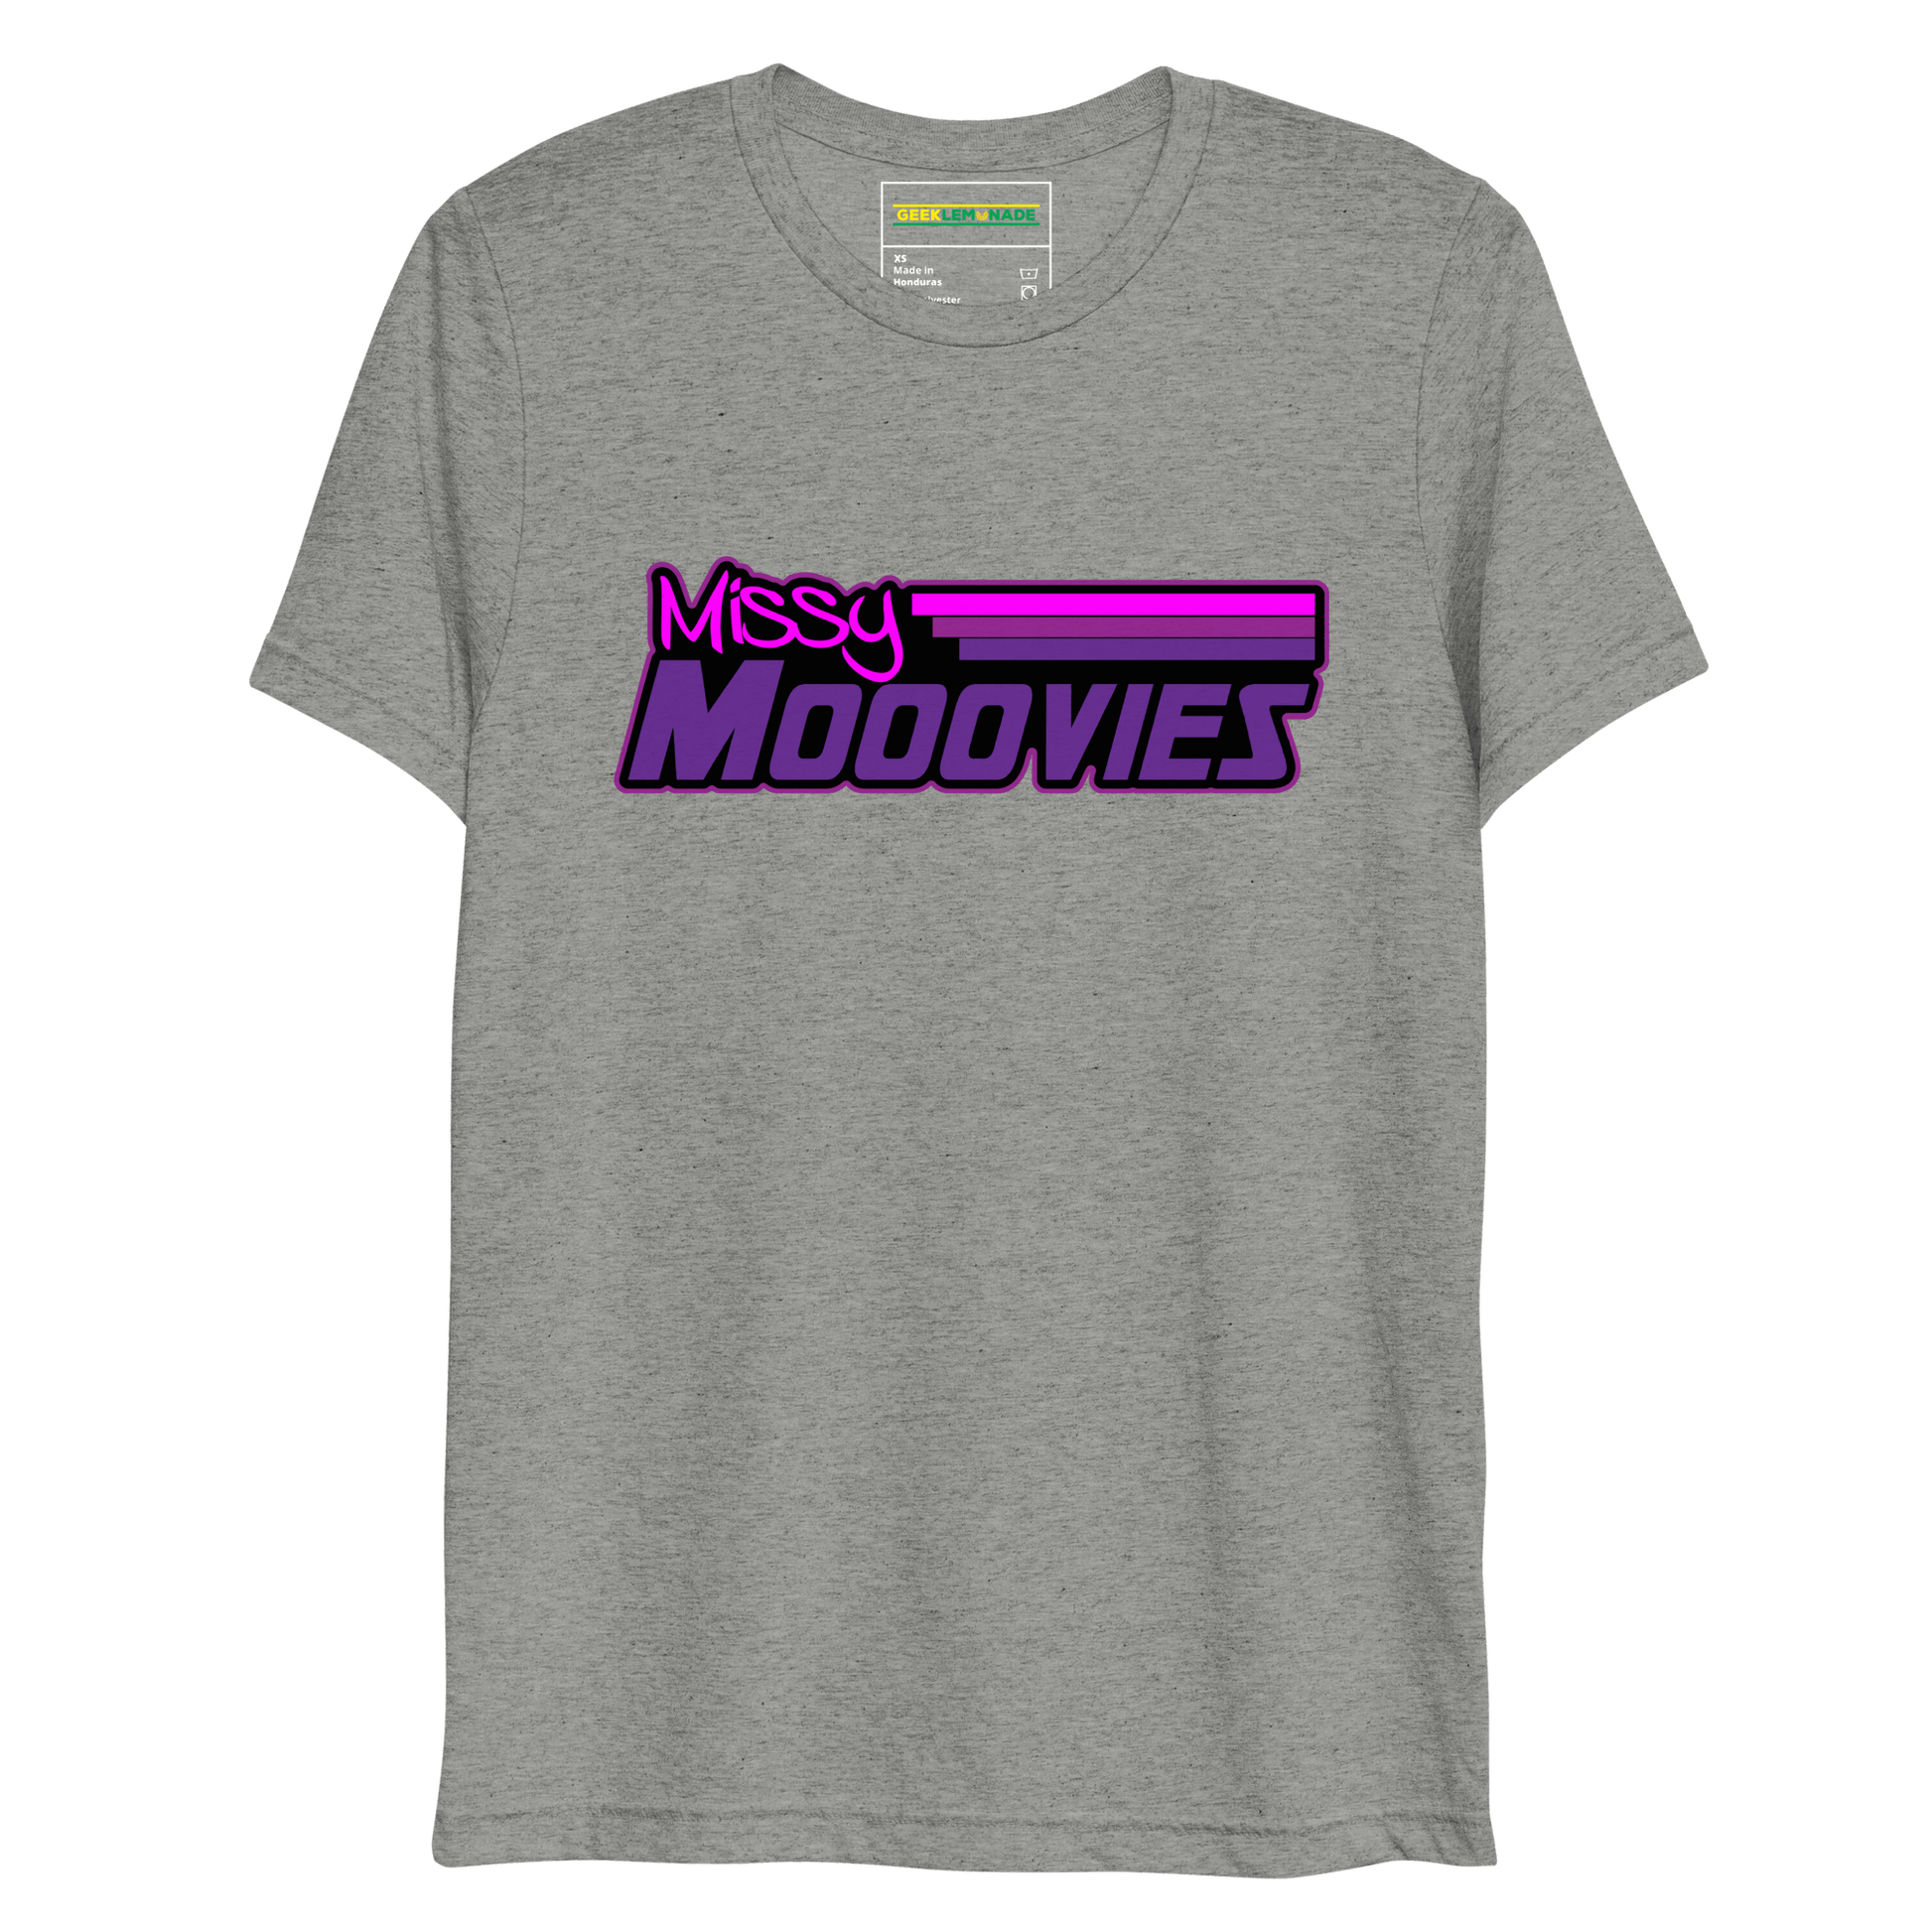 GeekLemonade Missy Mooovies Black Short sleeve t-shirt